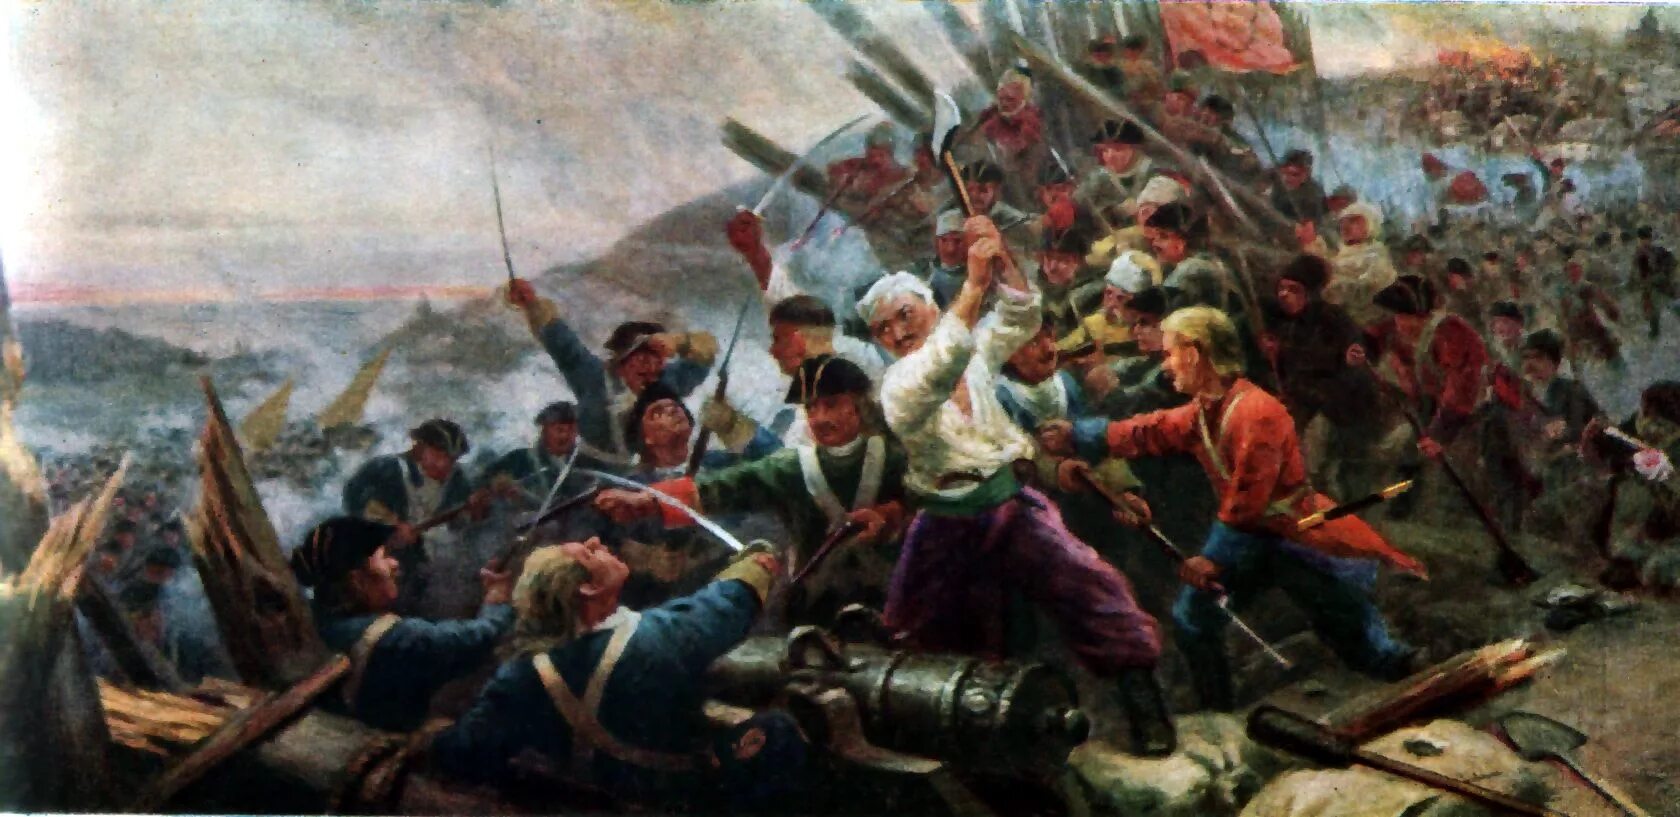 Полтавская битва (1709 год). Полтавская битва Суворов. Победа русского войска над шведским